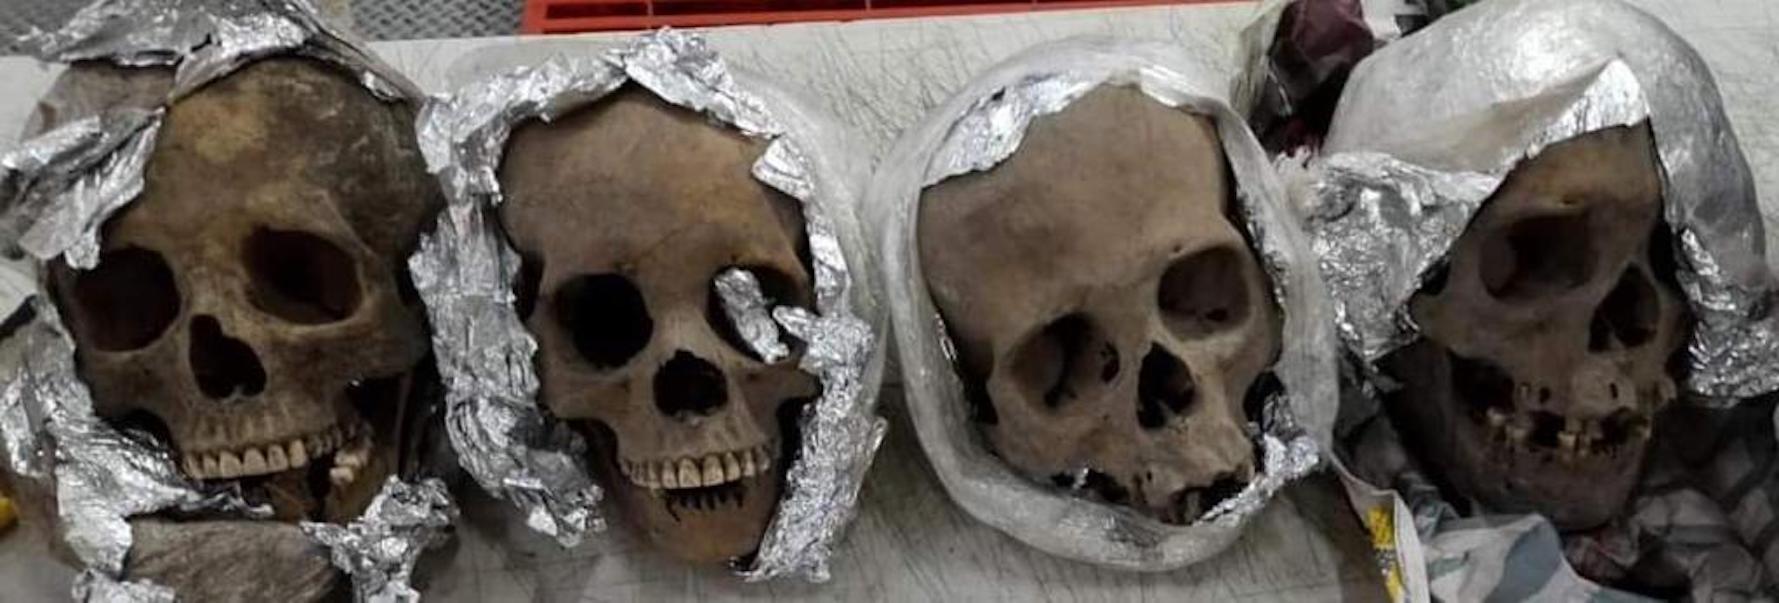 Halla GN cráneos humanos en una paquetería